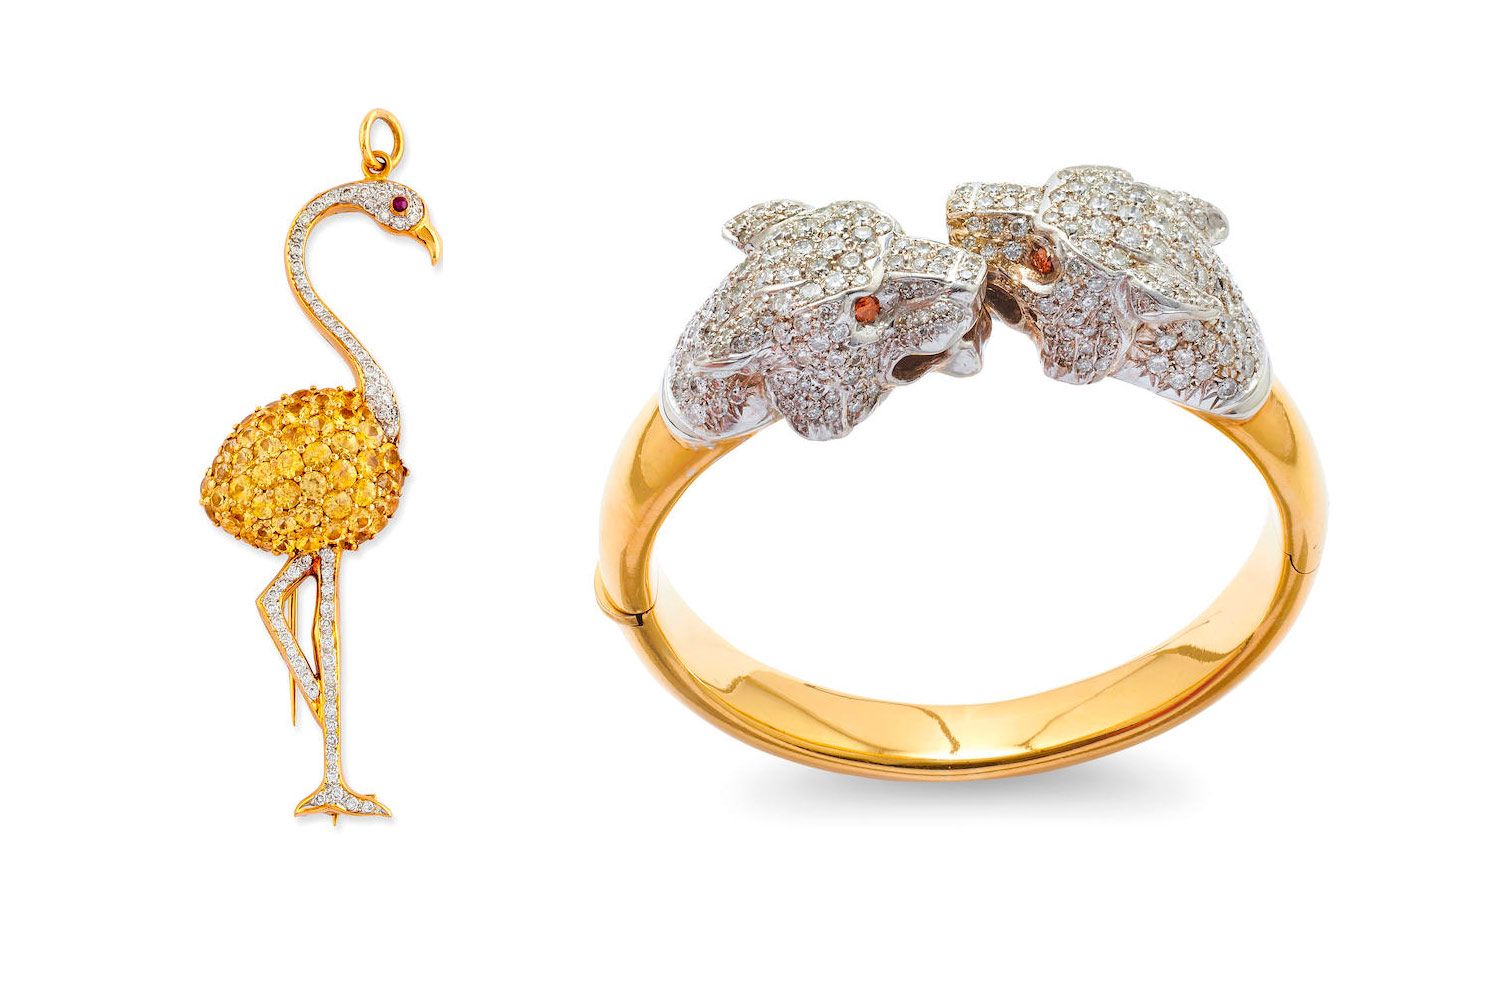 Брошь-фламинго Tiffany & Co. с желтыми сапфирами и бриллиантами и браслет с головами львов, которые будут проданы на аукционе Bonhams Paris в ноябре 2021 года